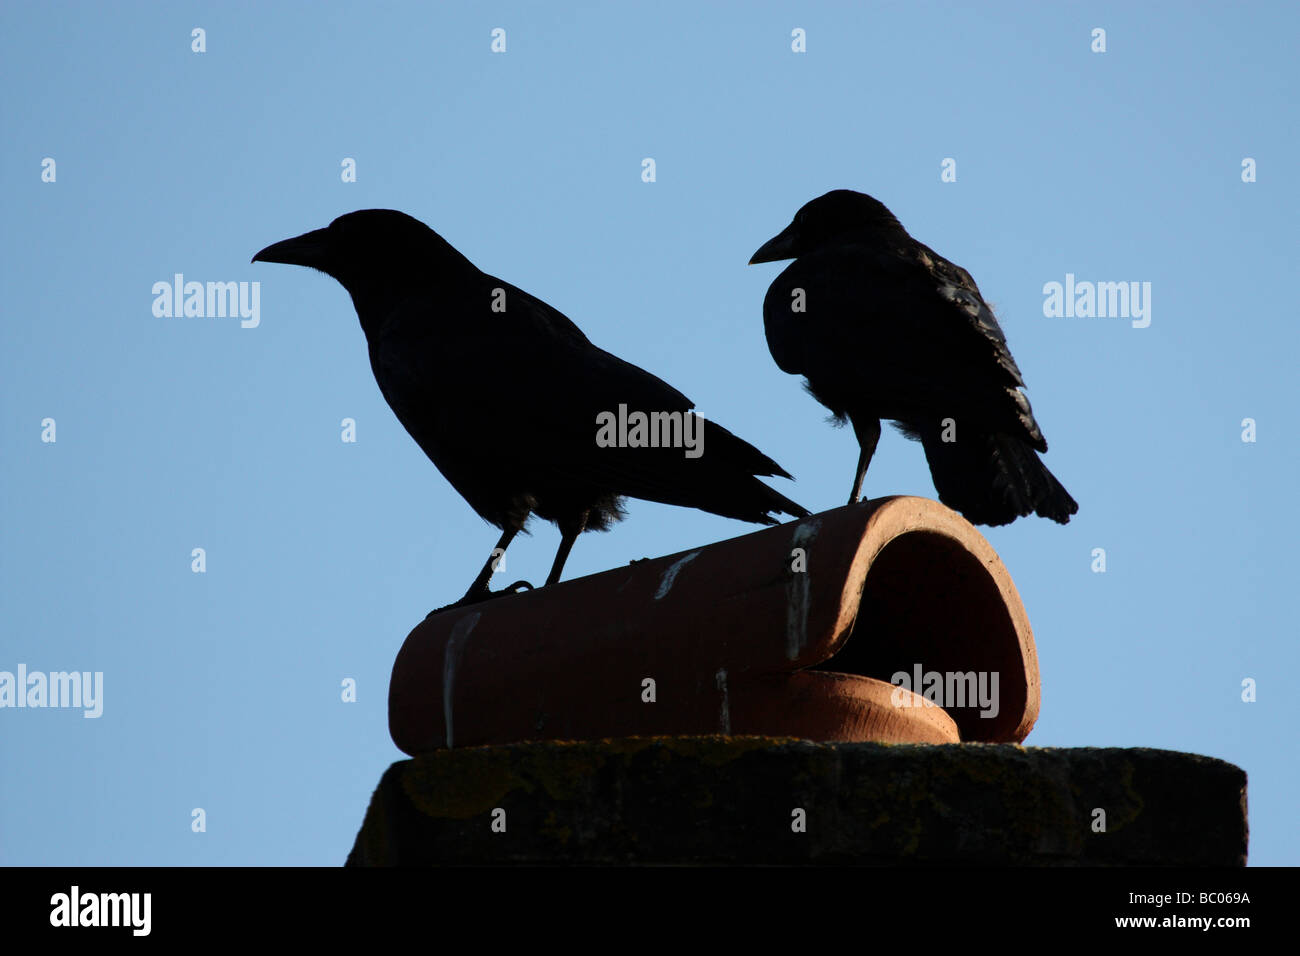 Zwei Krähen thront auf einem Schornstein Stockfotografie - Alamy